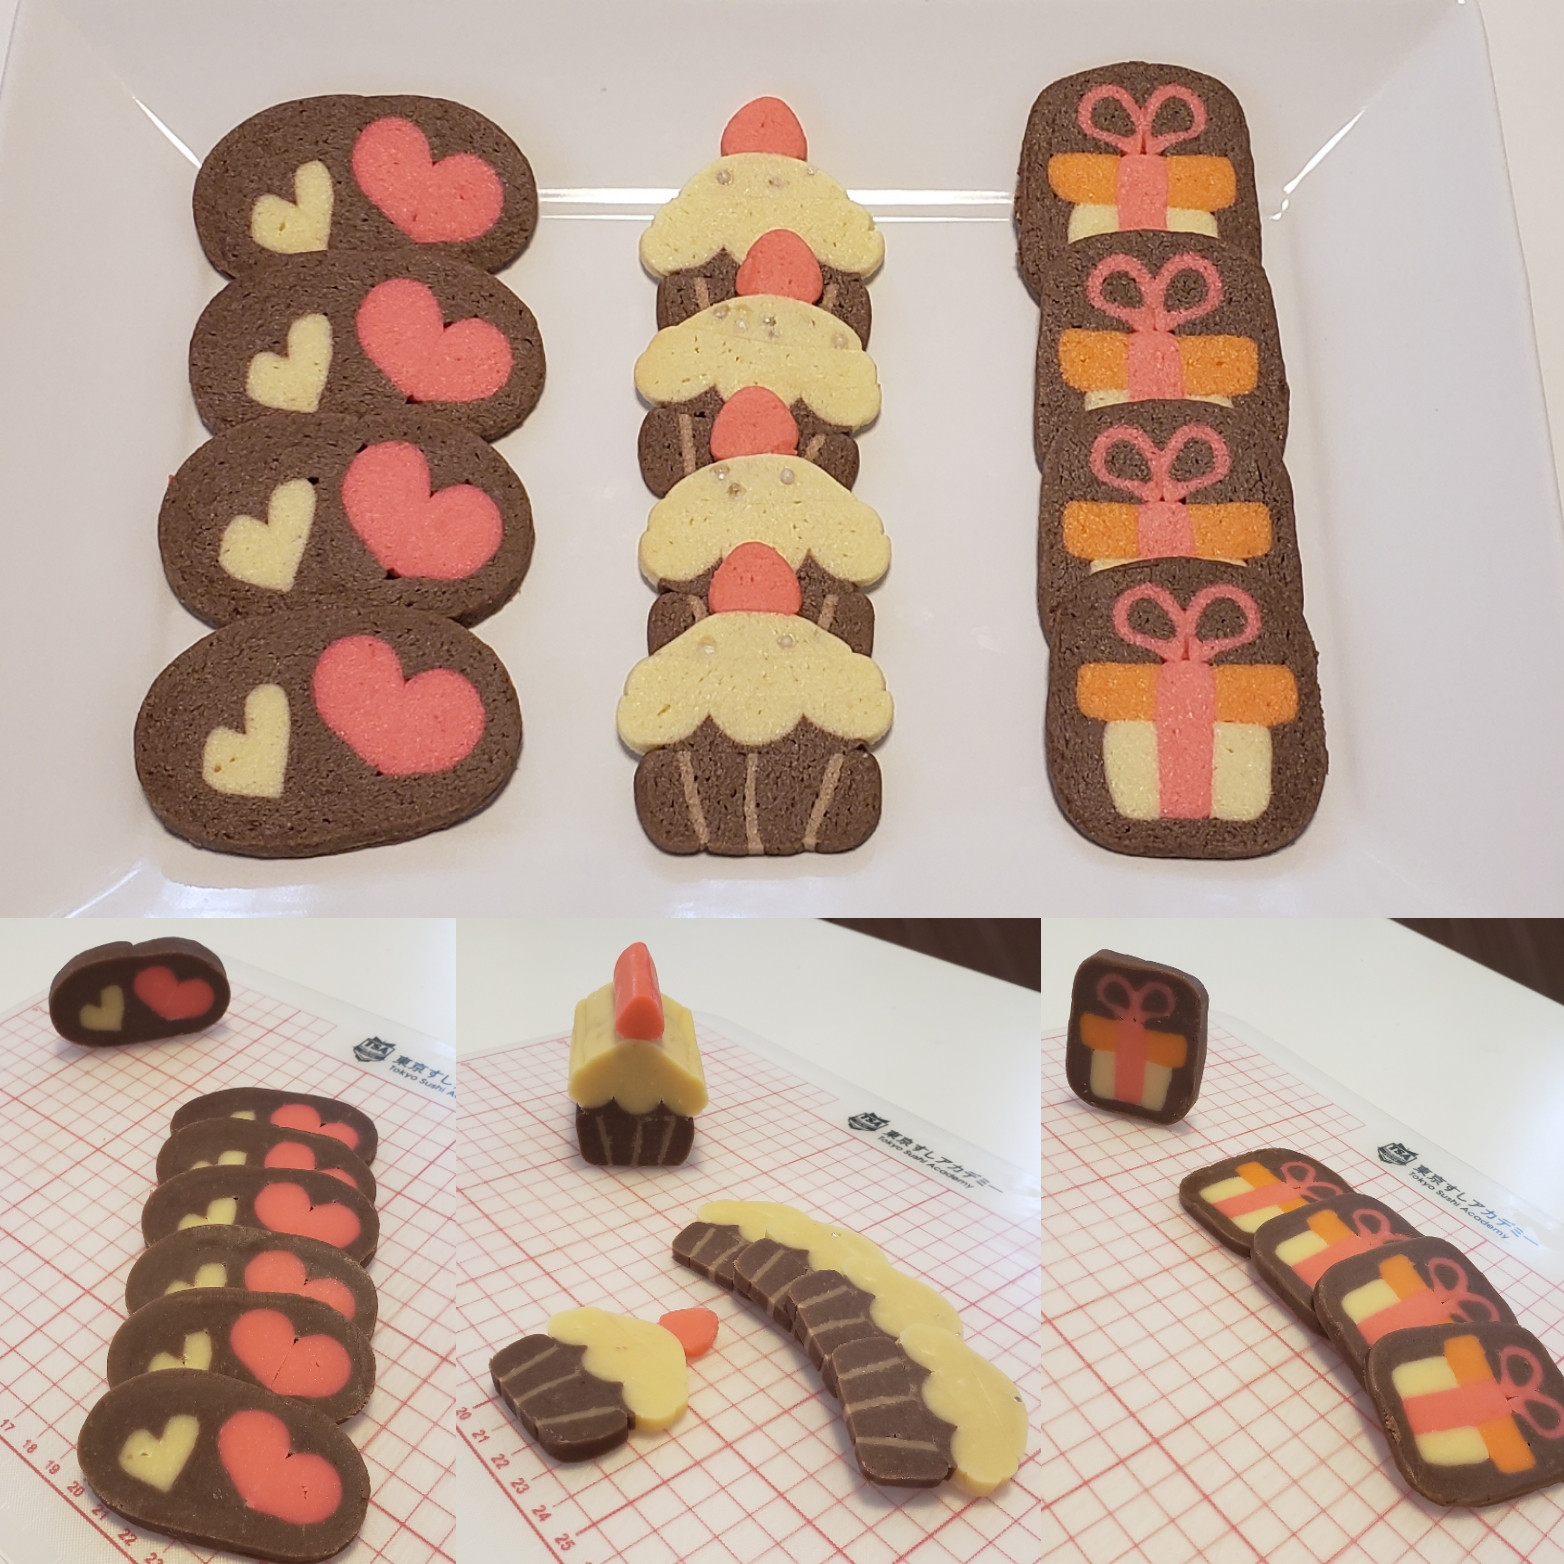 アイスボックスクッキー 資格取得講座 飾り巻き寿司とアイスボックスクッキーの教室 彩 Irodori Cafe